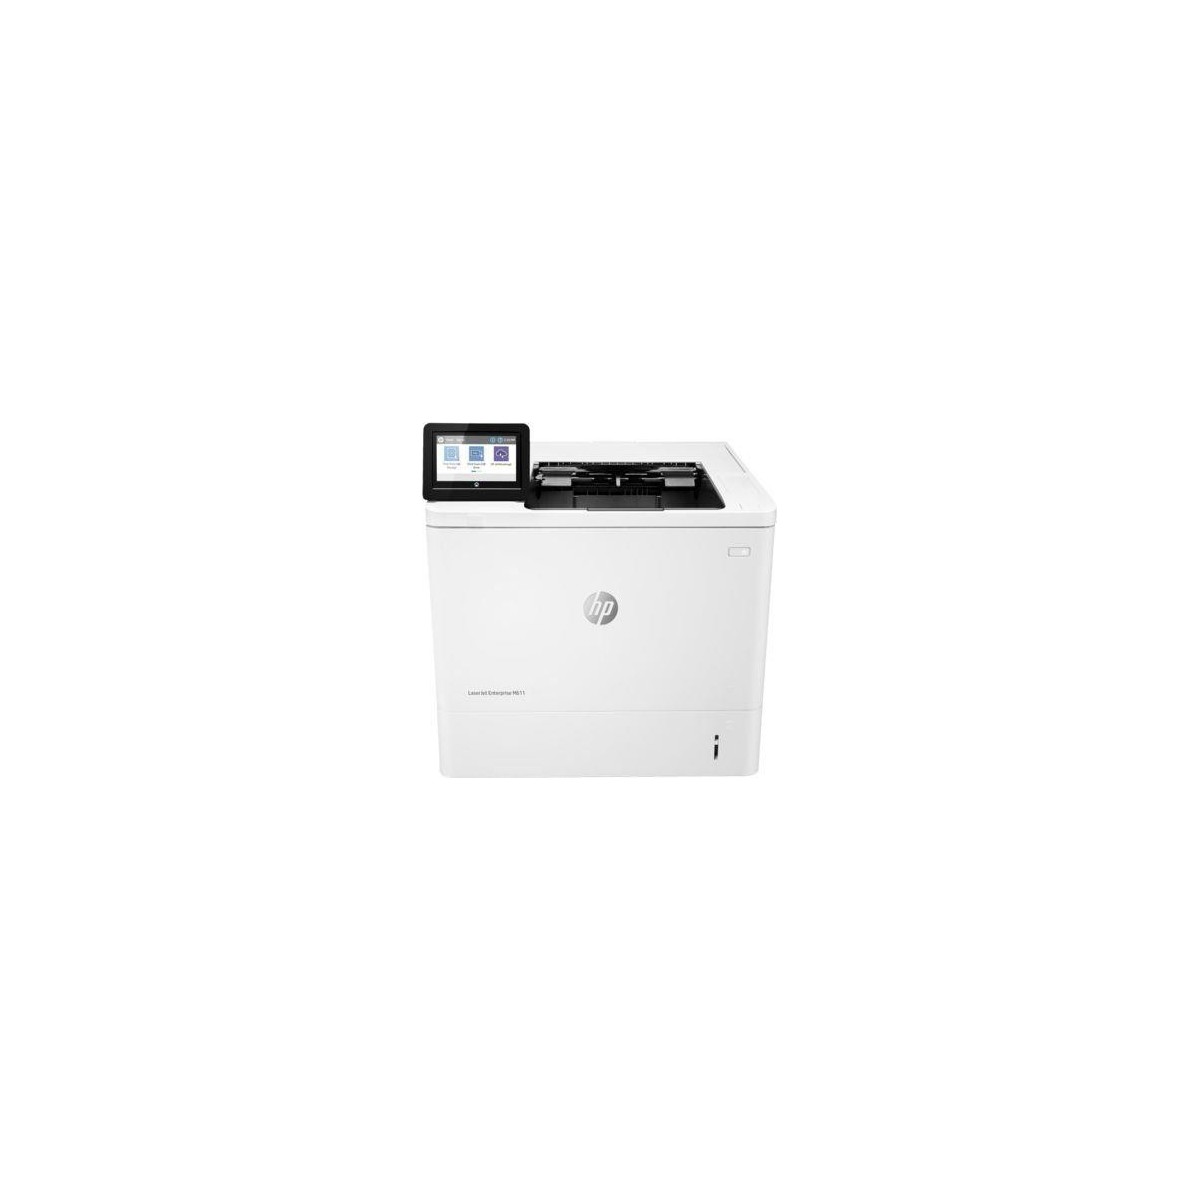 HP LaserJet Enterprise M611dn - Laser - 1200 x 1200 DPI - A4 - 65 ppm - Duplex printing - White